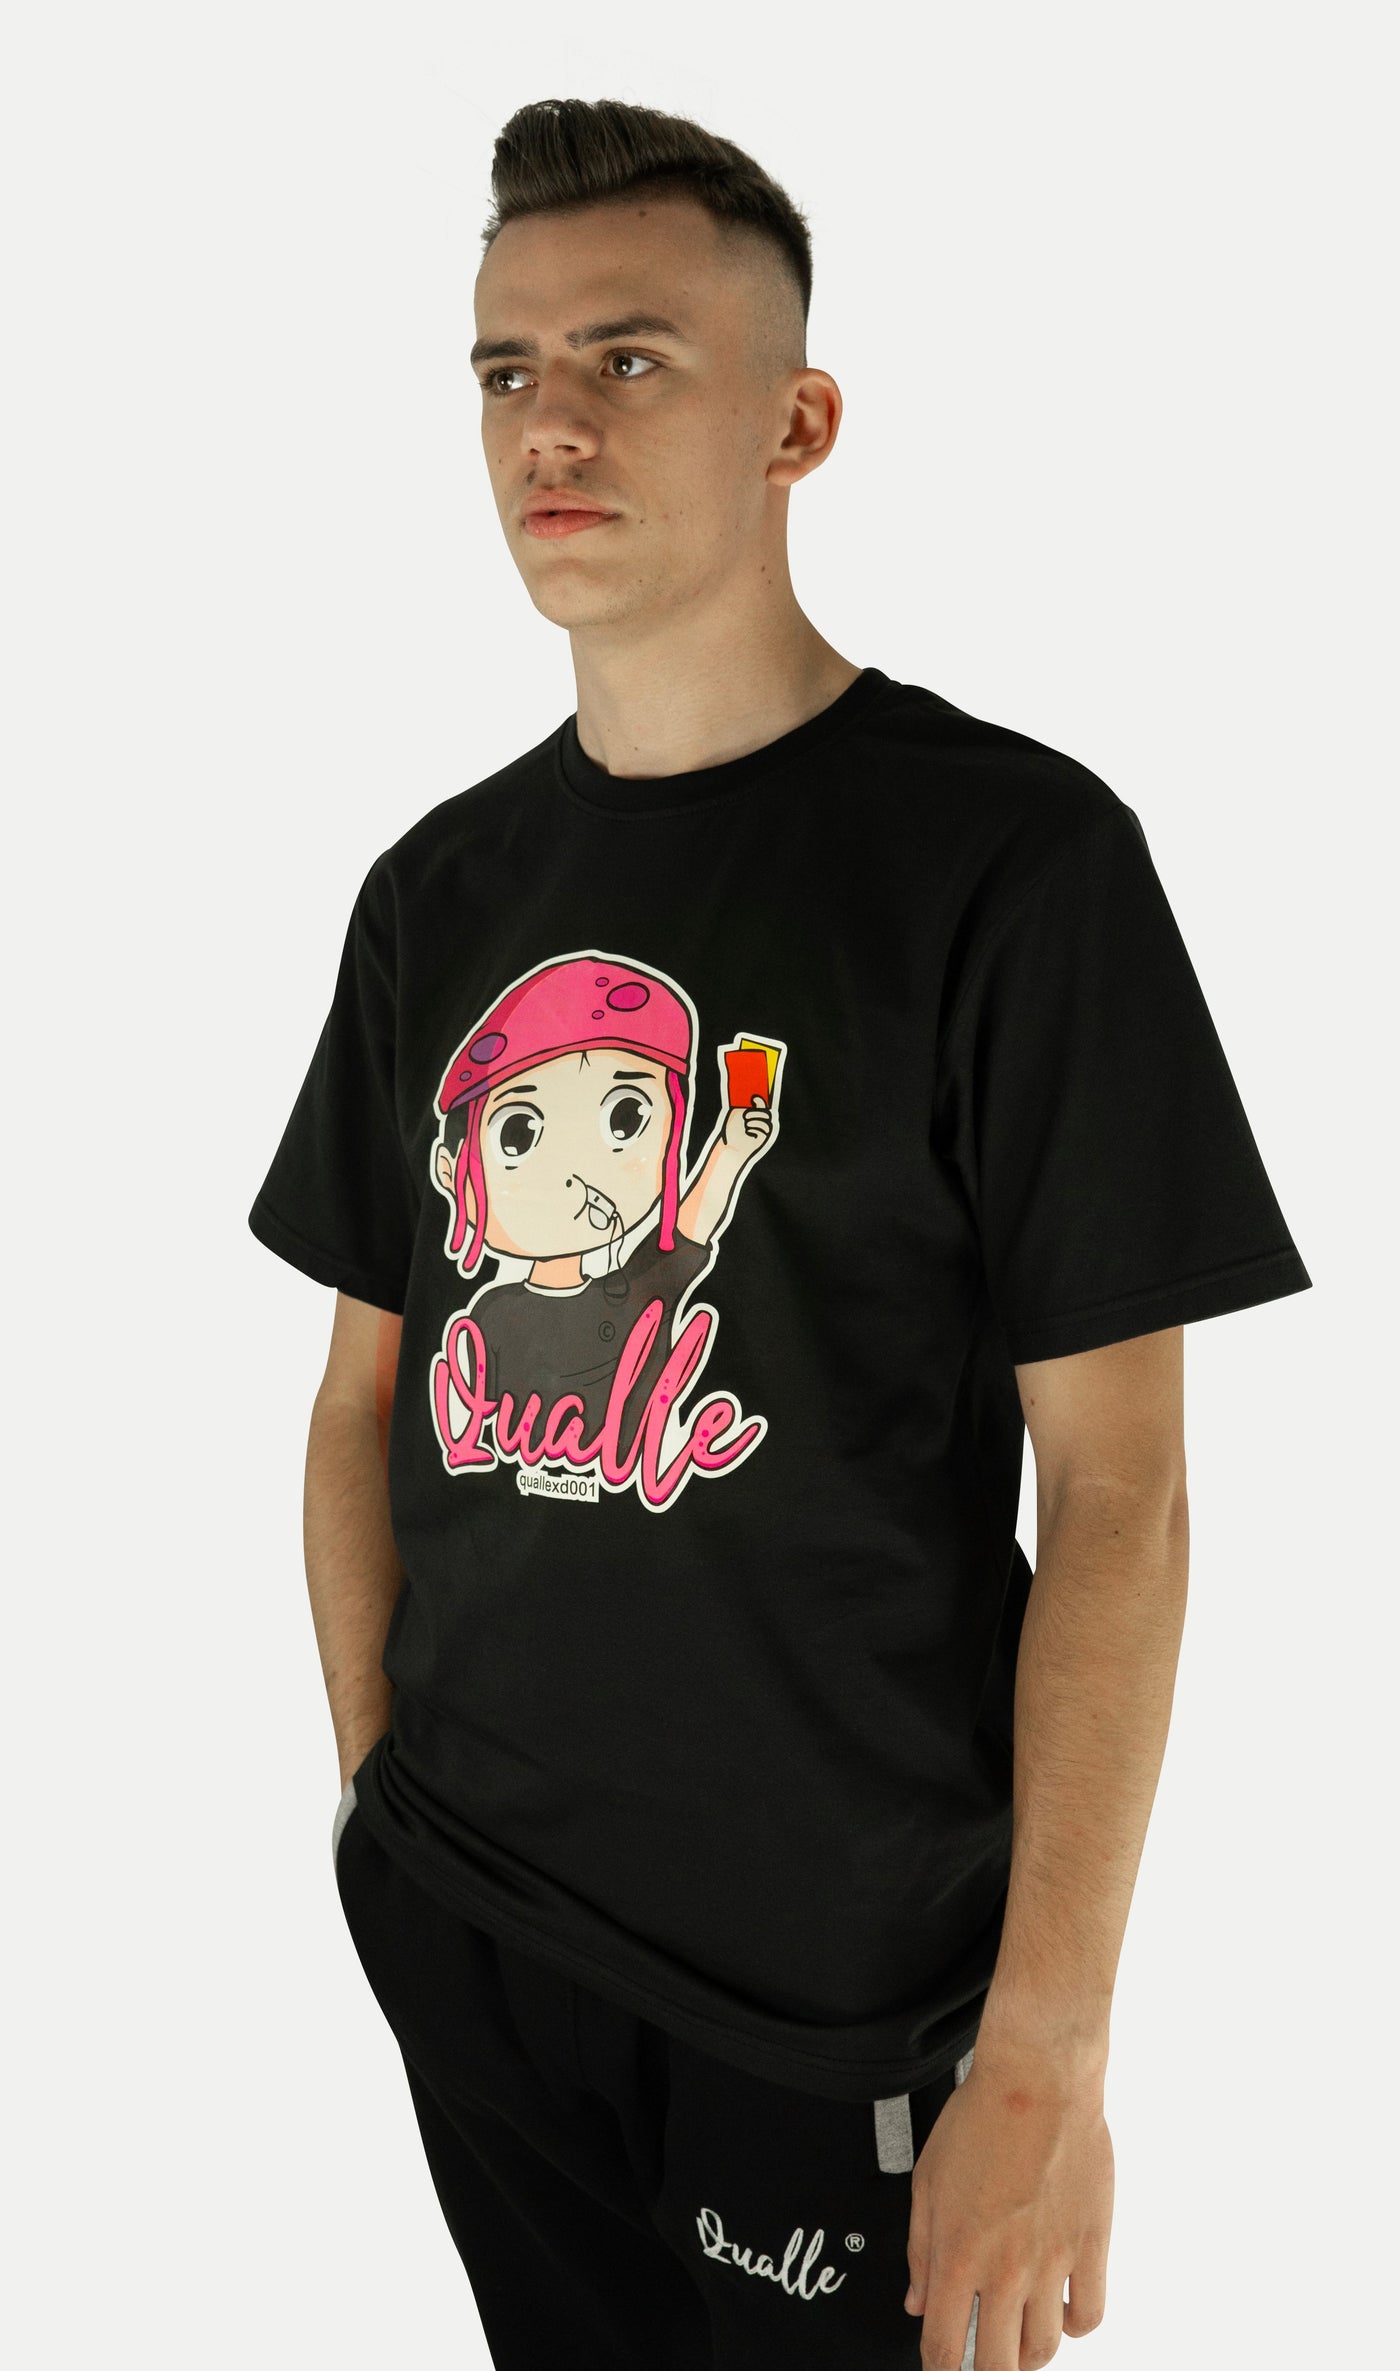 Qualle T-Shirt "Quallekopf-Respekt" Baumwolle unisex (Kinder, Frauen und Herren)